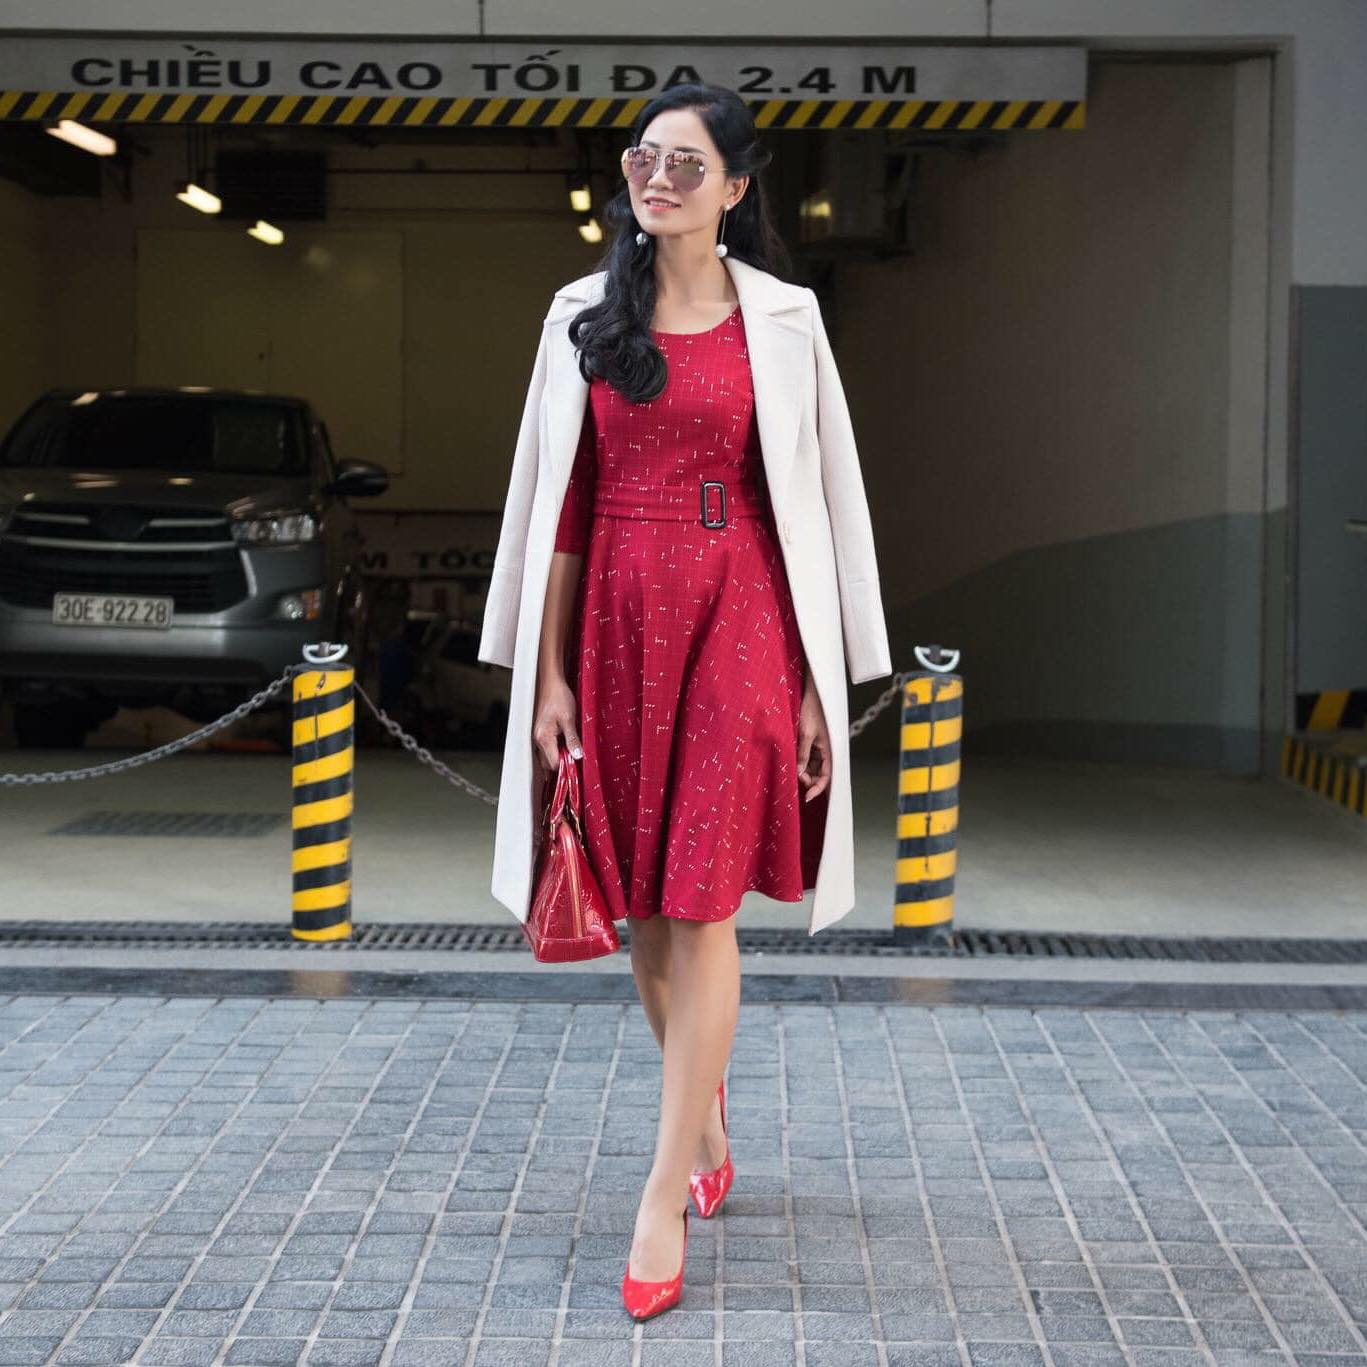 Đại sứ thương hiệu MC Fashion Lưu Lan Anh – Phong cách Pháp giữa lòng Hà Nội